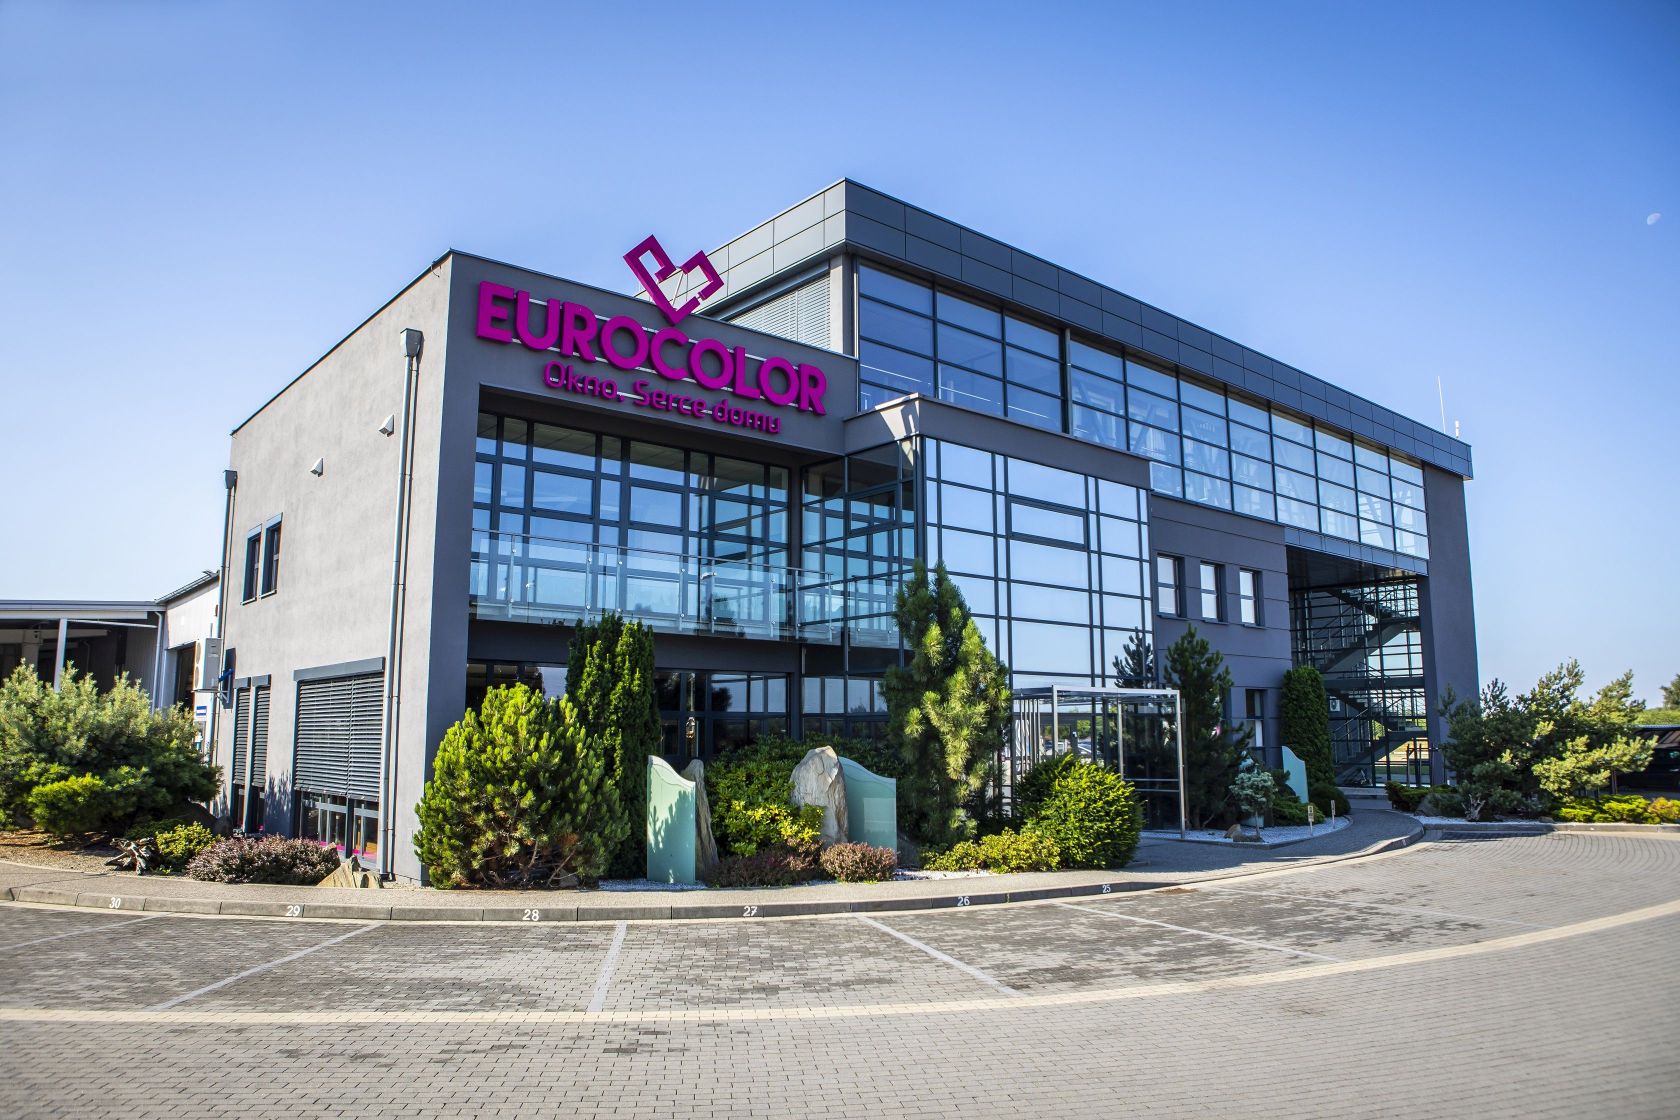 Okna EUROCOLOR opinie o produktach polskiego producenta